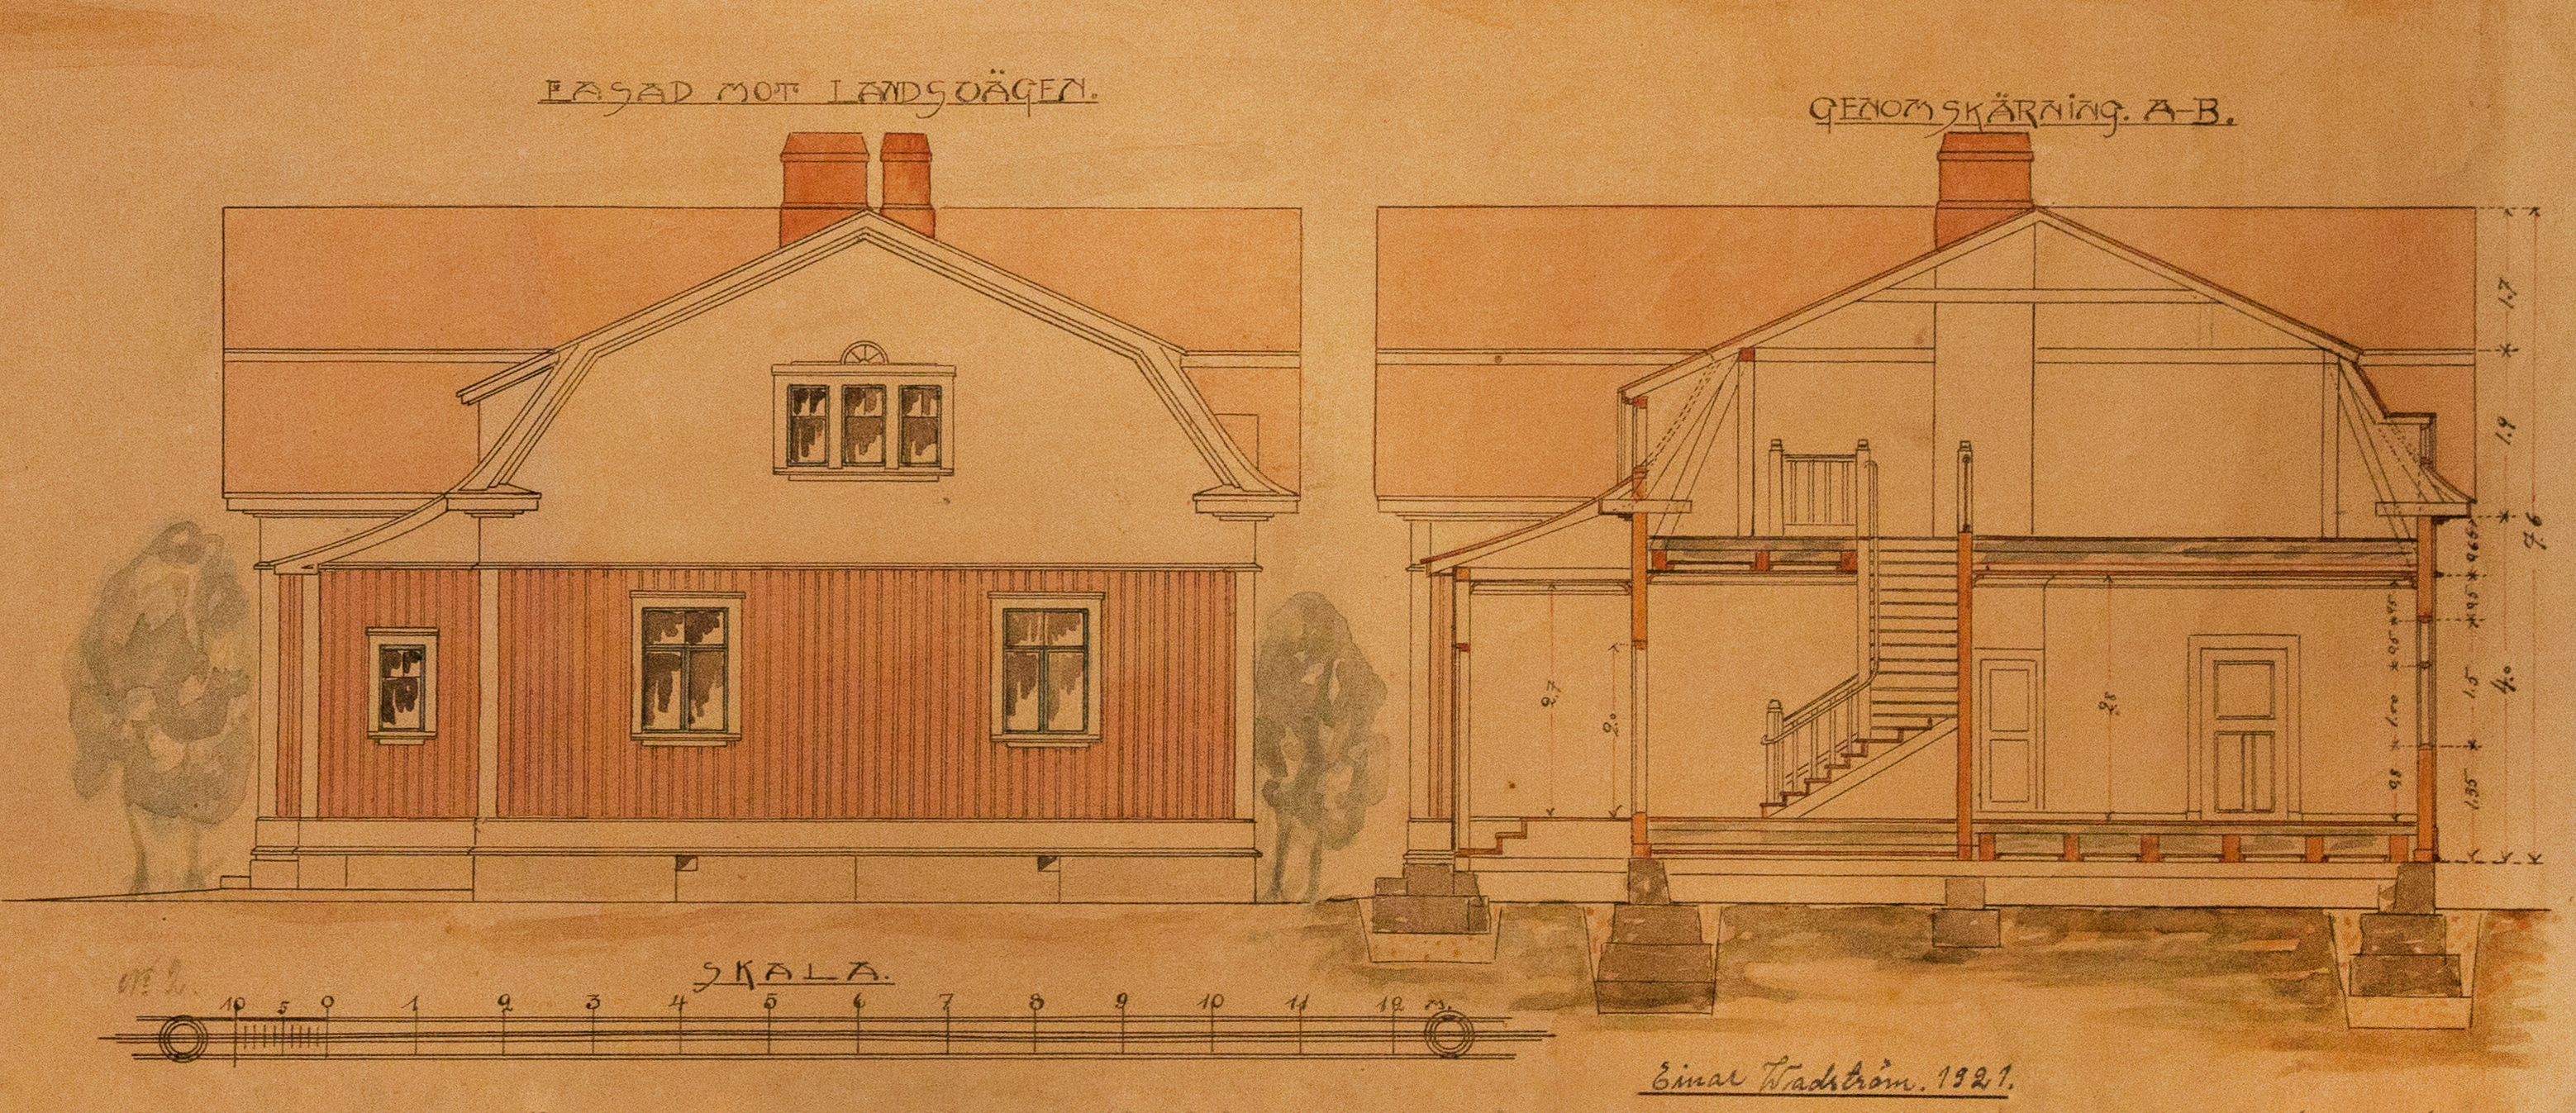 Här står det att det var lärarsonen Einar Wadström som hade gjort ritningen år 1921, året före gården byggdes.